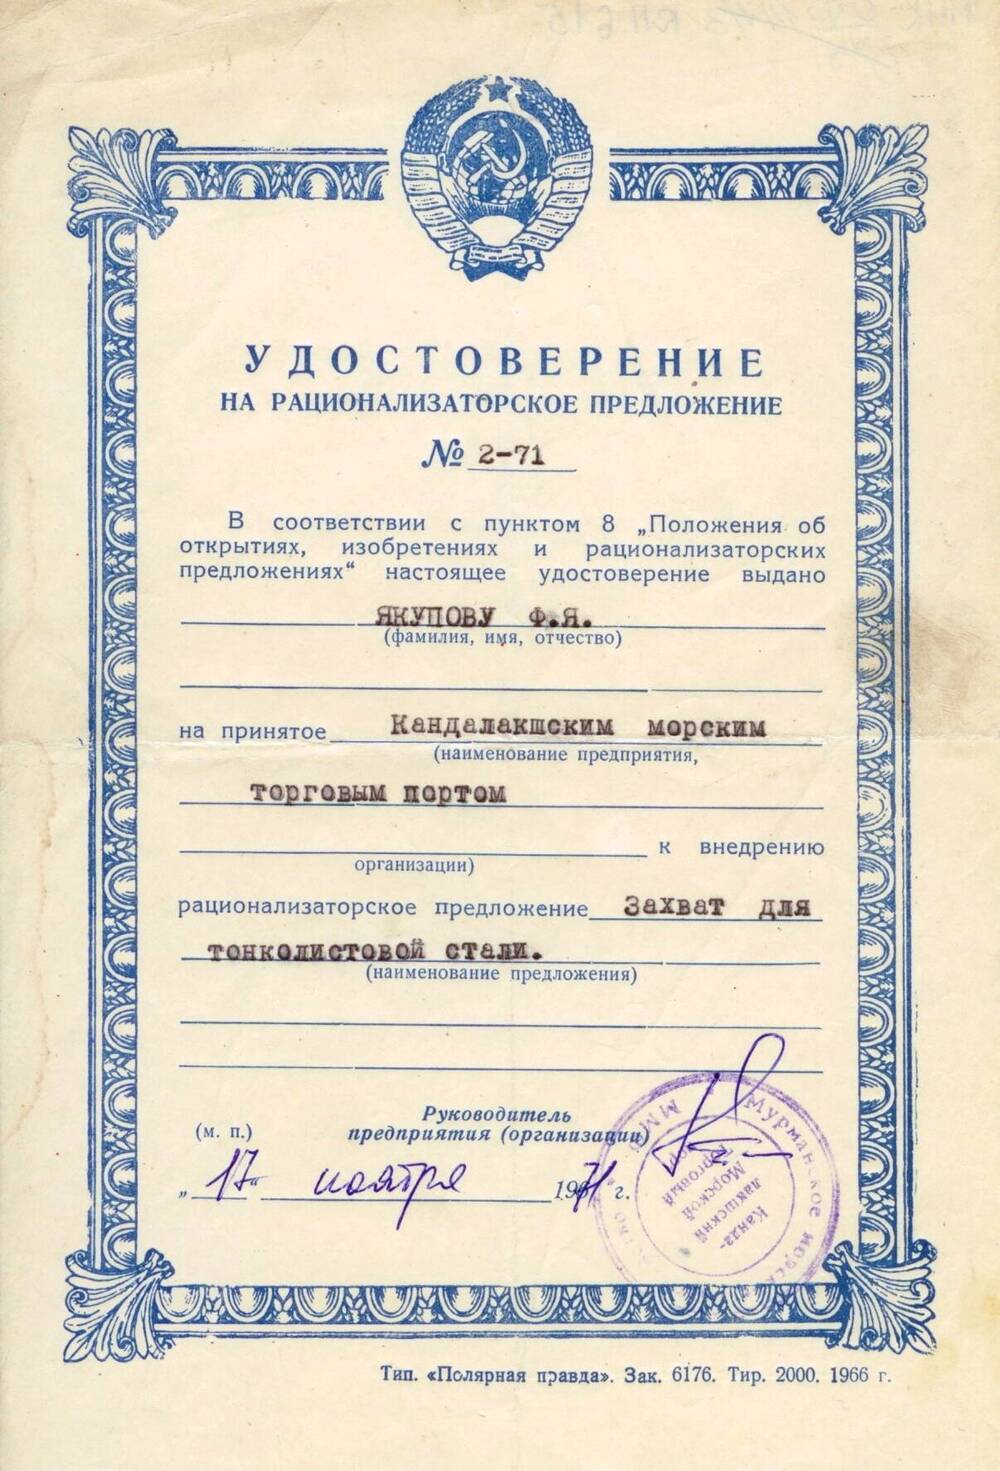 Удостоверение на рационализаторское предложение № 2-71 Якупова Ф. Я.